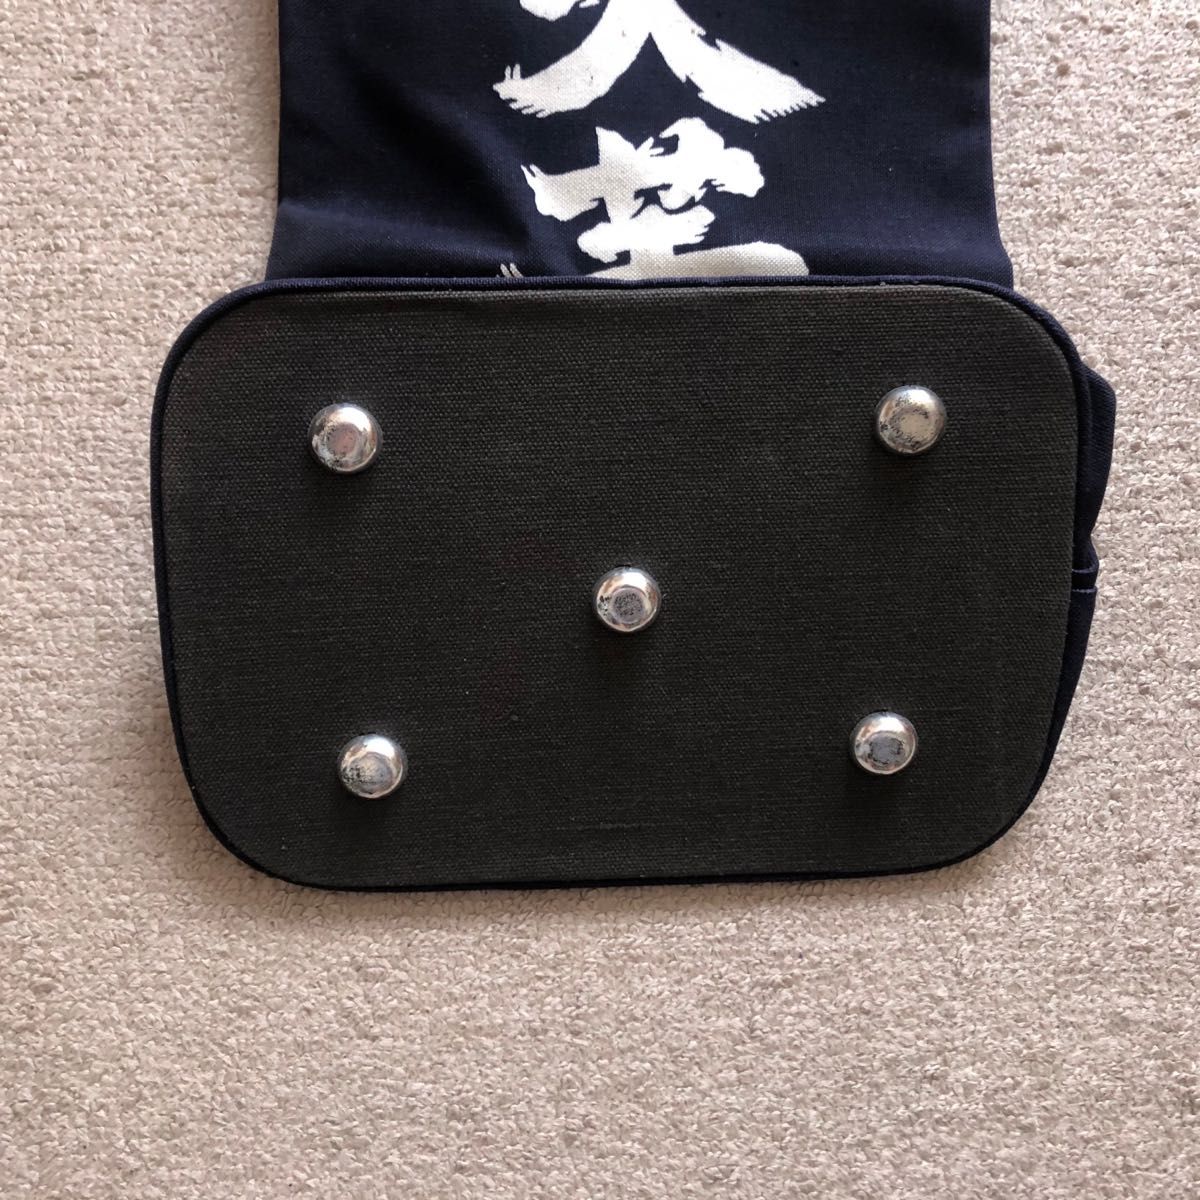 甚吉袋　酒袋　日本酒袋　通い袋　通袋　エコバッグ　マイバッグ　工具袋